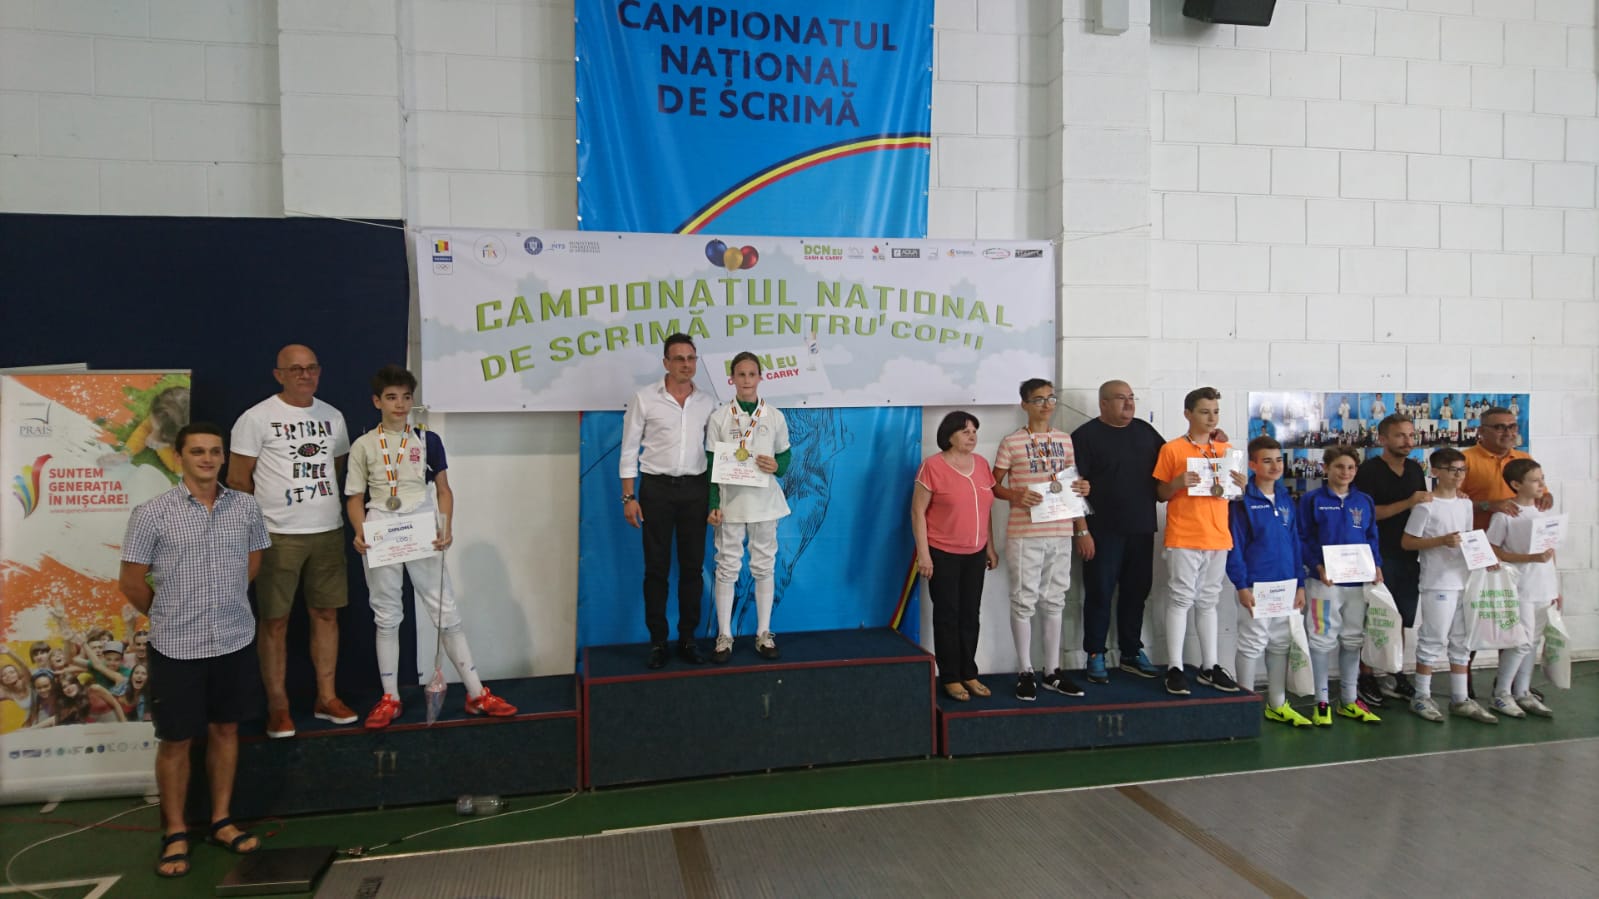 Mihnea Surcel (ACS Balestra) a câștigat Campionatul Național de scrimă pentru copii de la București, ediția 2018, în proba de floretă masculin, la categoria 12-13 ani